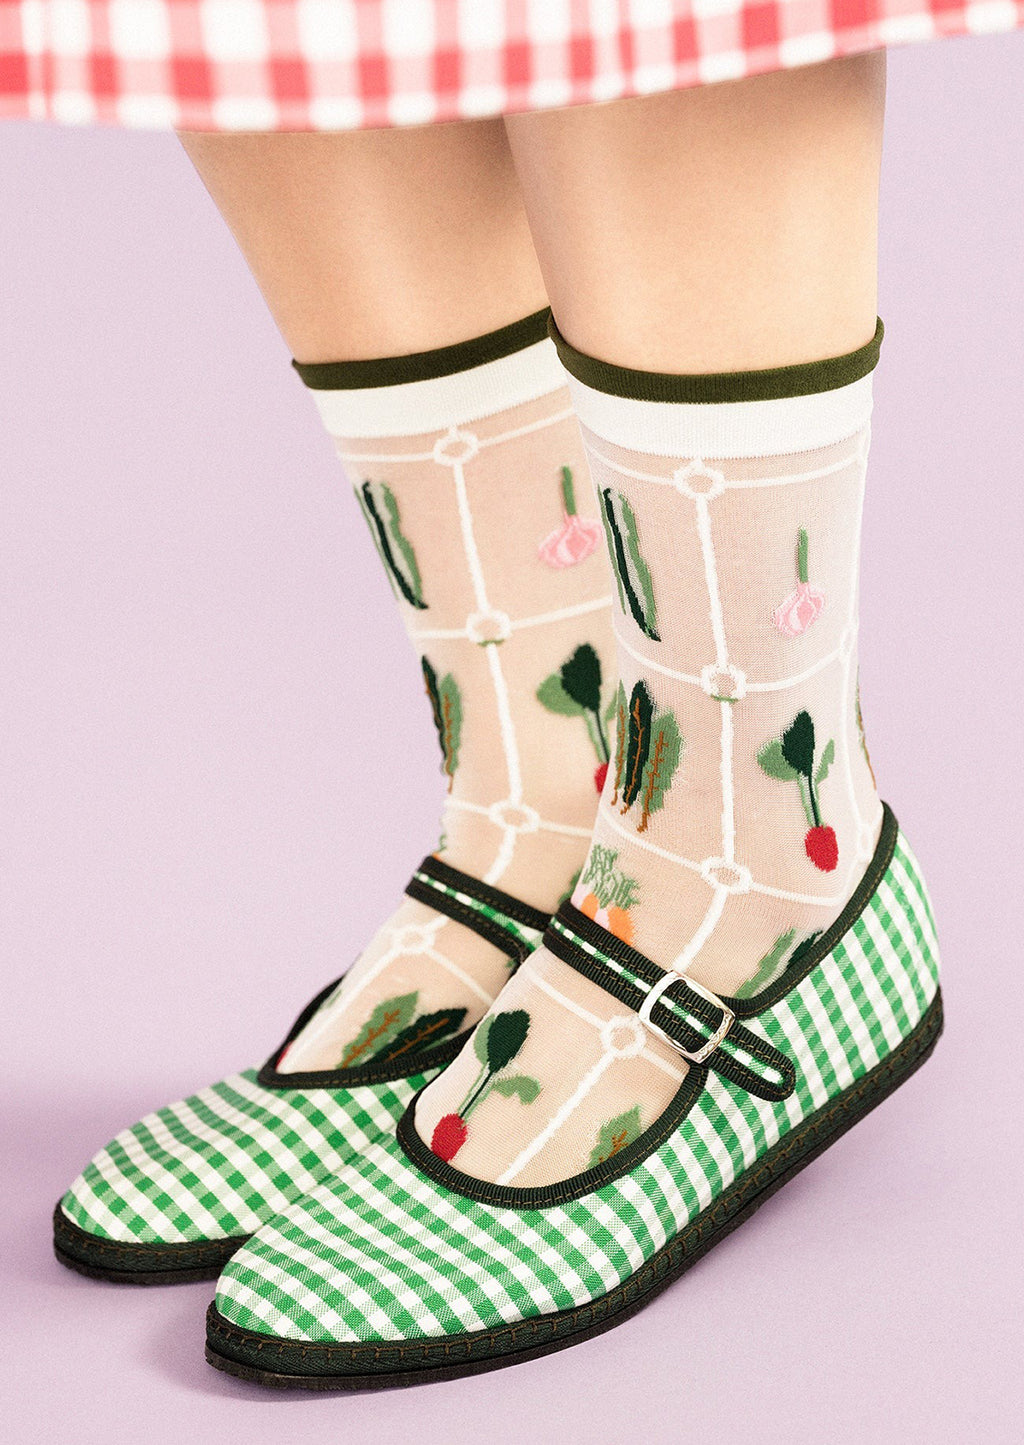 White: Sheer white nylon socks with multicolor veggie print.